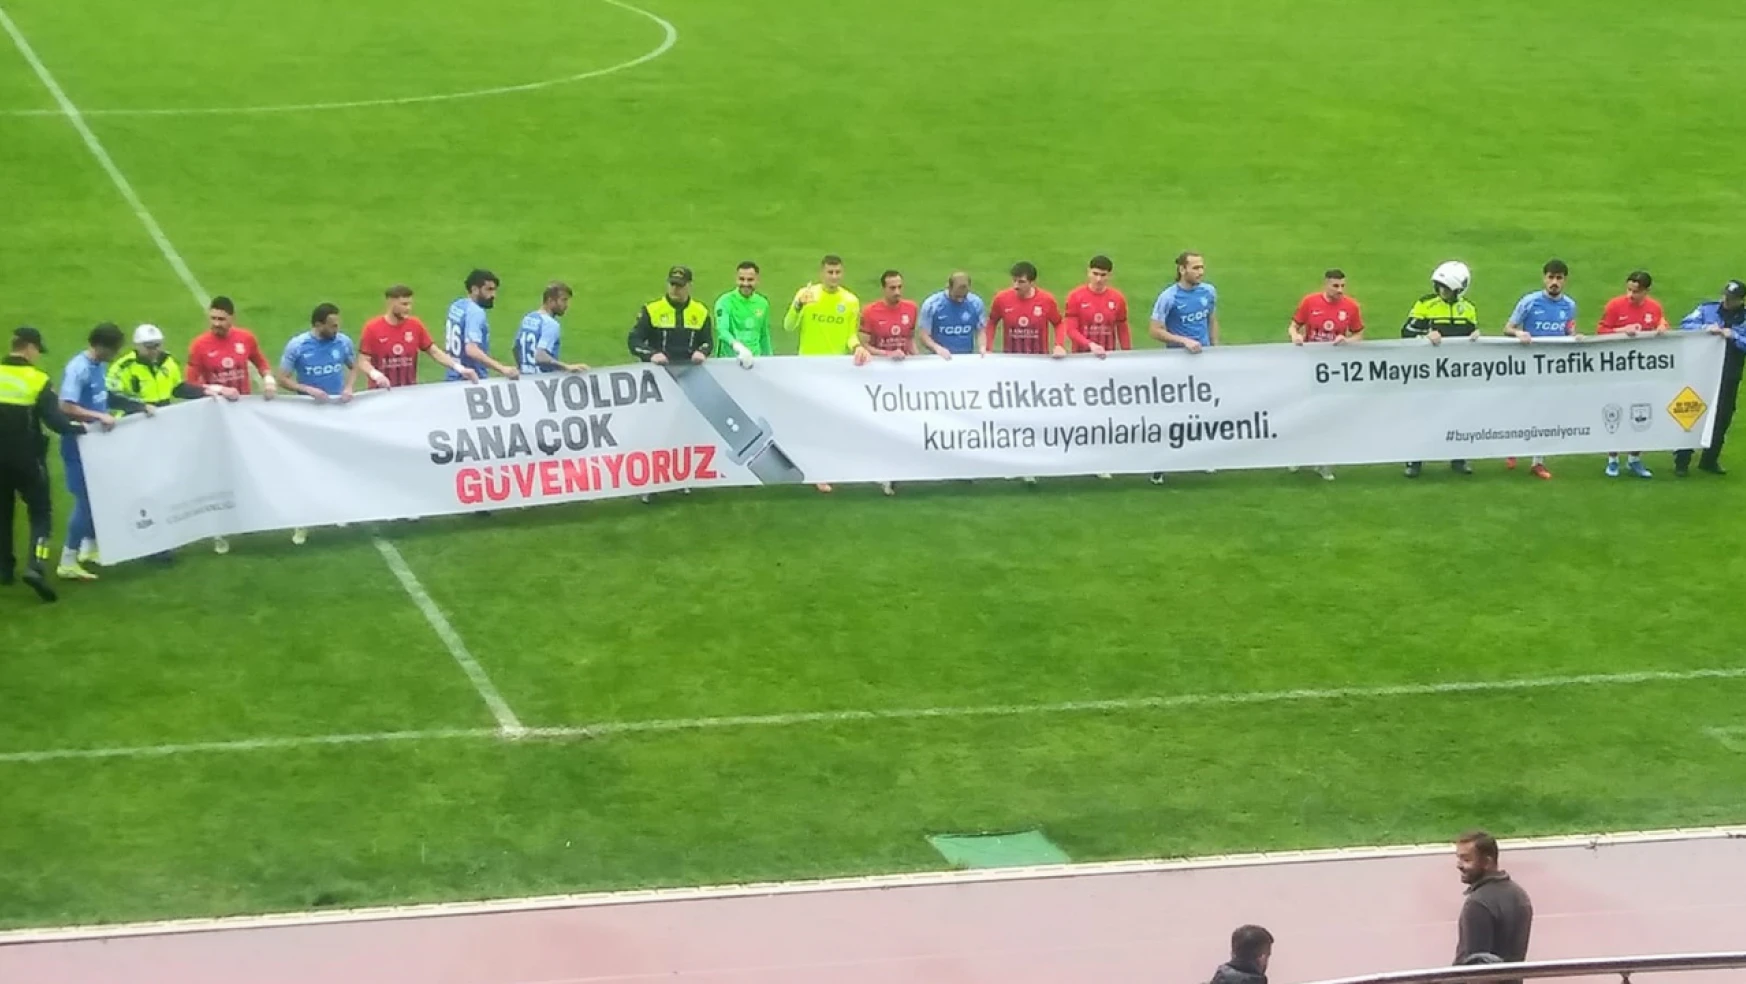 Kastamonuspor-Ankara Demirspor maçında Trafik Haftası pankartı